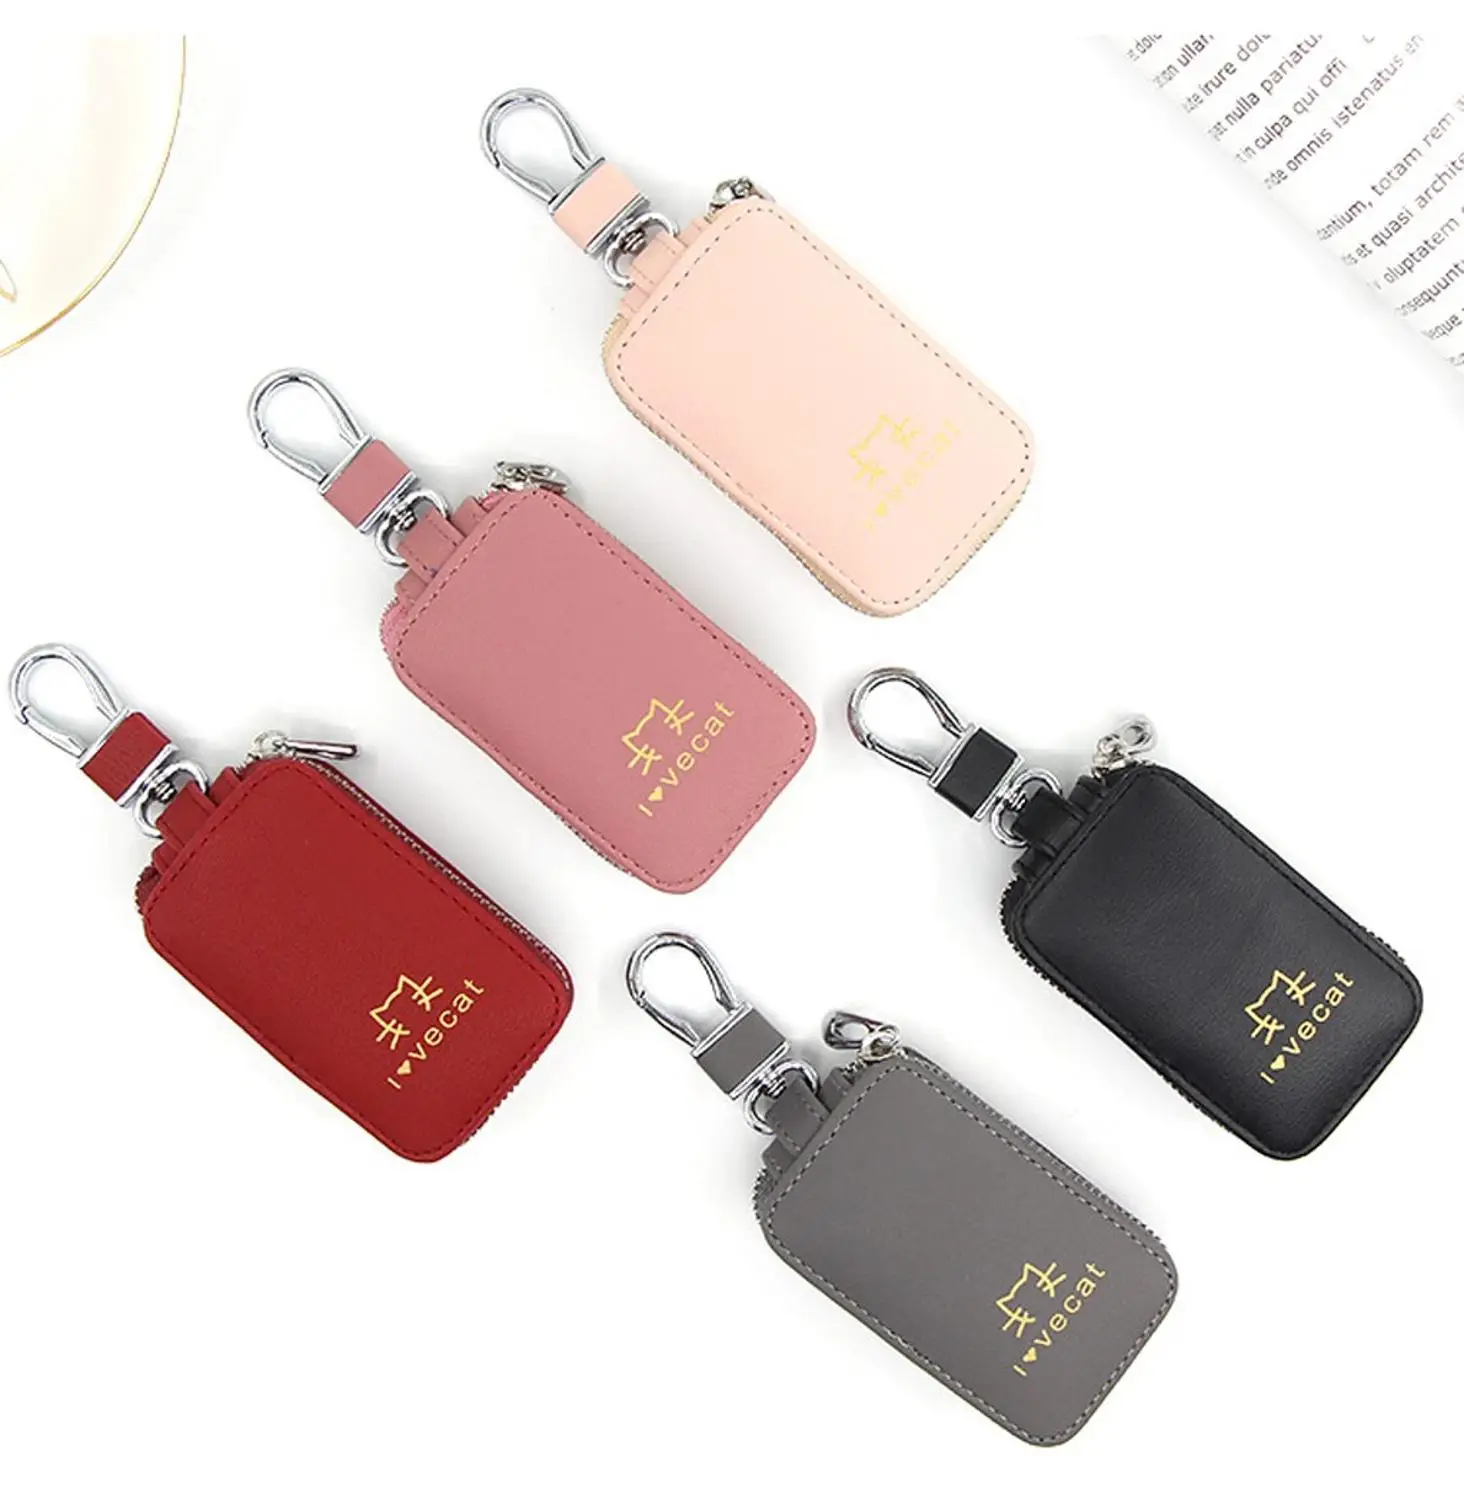 Ключница Женская мини-сумка кошелек для ключей унисекс Уличная мода тренд сплошной цвет кожа молния многофункциональный чехол для ключей#2O29